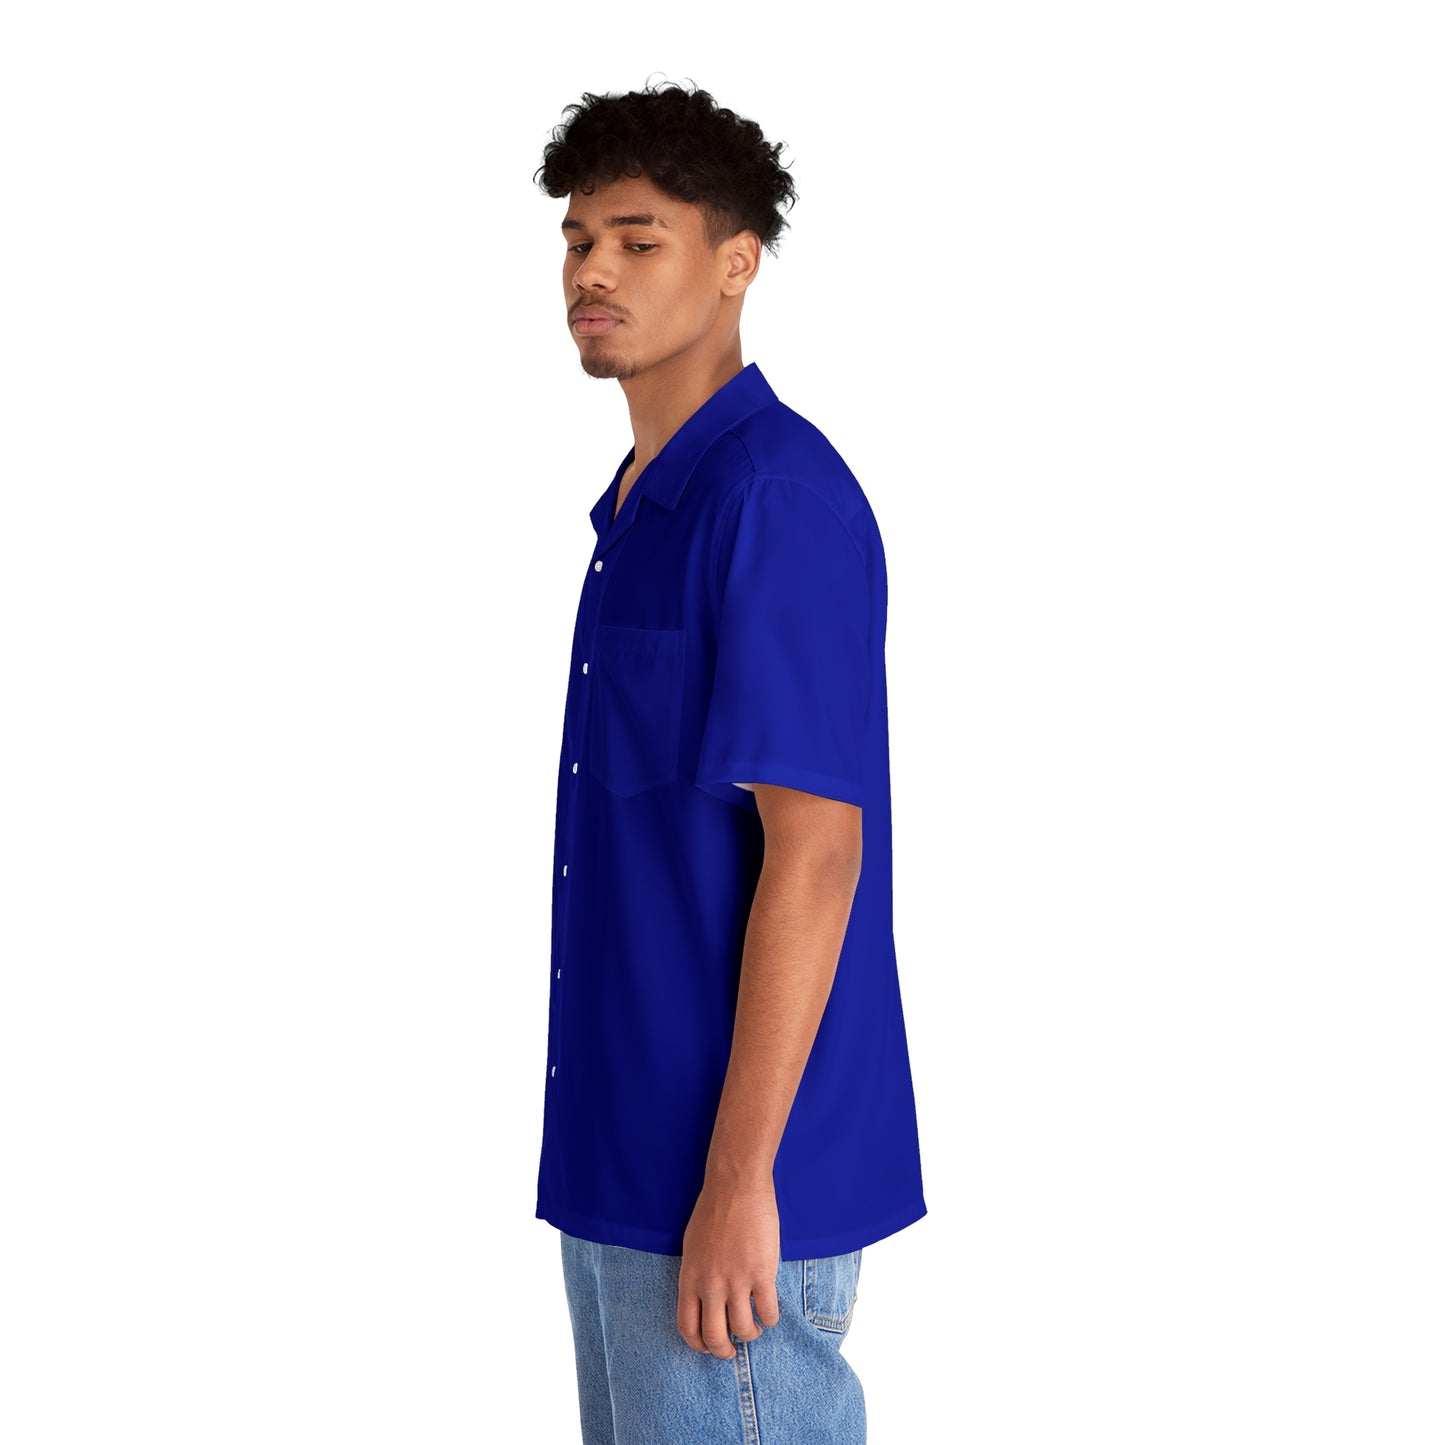 Dark Blue Button Up Shirt